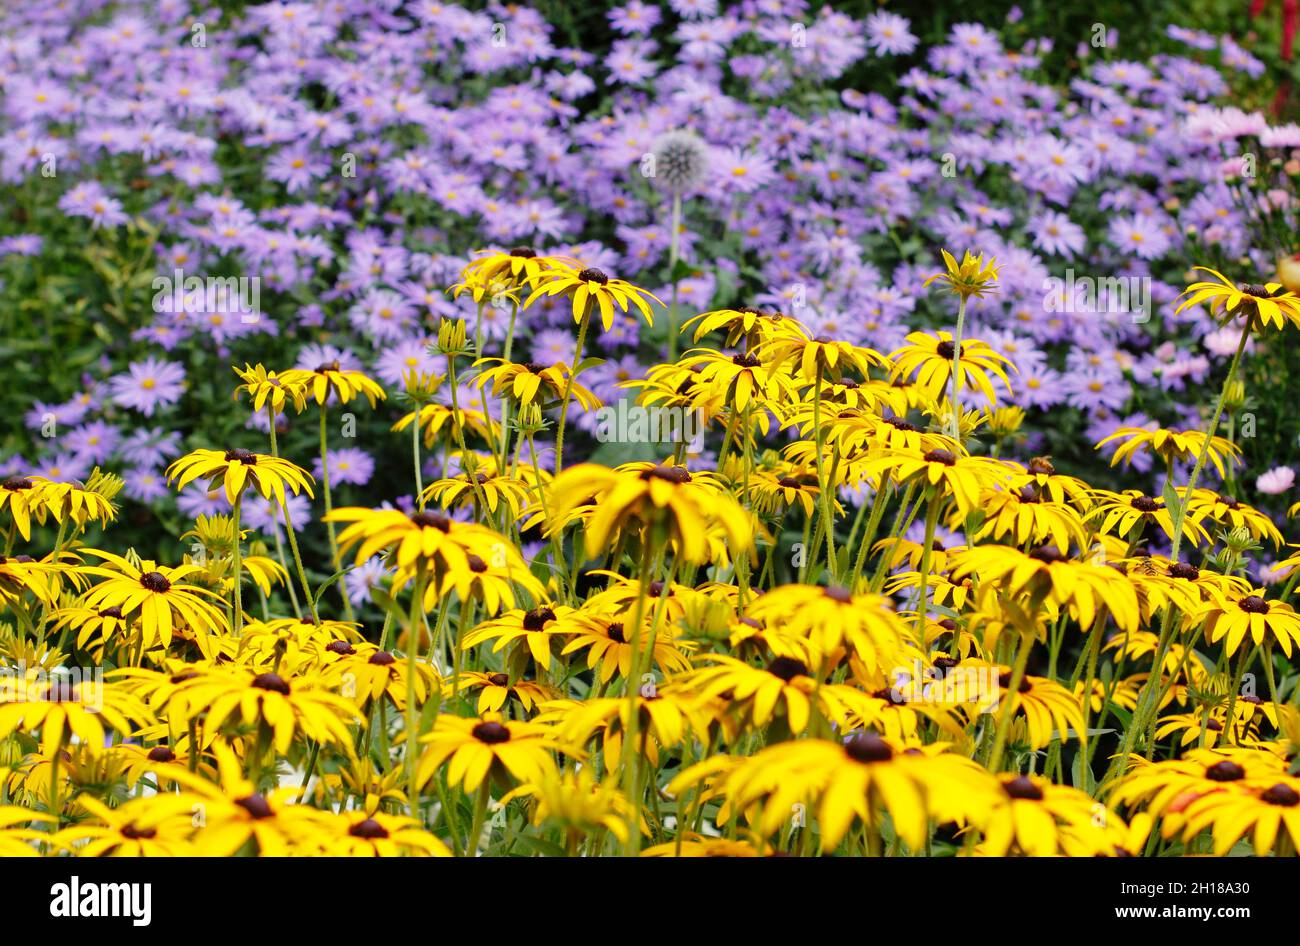 Rudbeckia et aster dans un jardin en septembre.Jaune rudbeckia 'Goldstrurm' et aster frikartii 'Monch'.Rudbeckias et asters.ROYAUME-UNI Banque D'Images